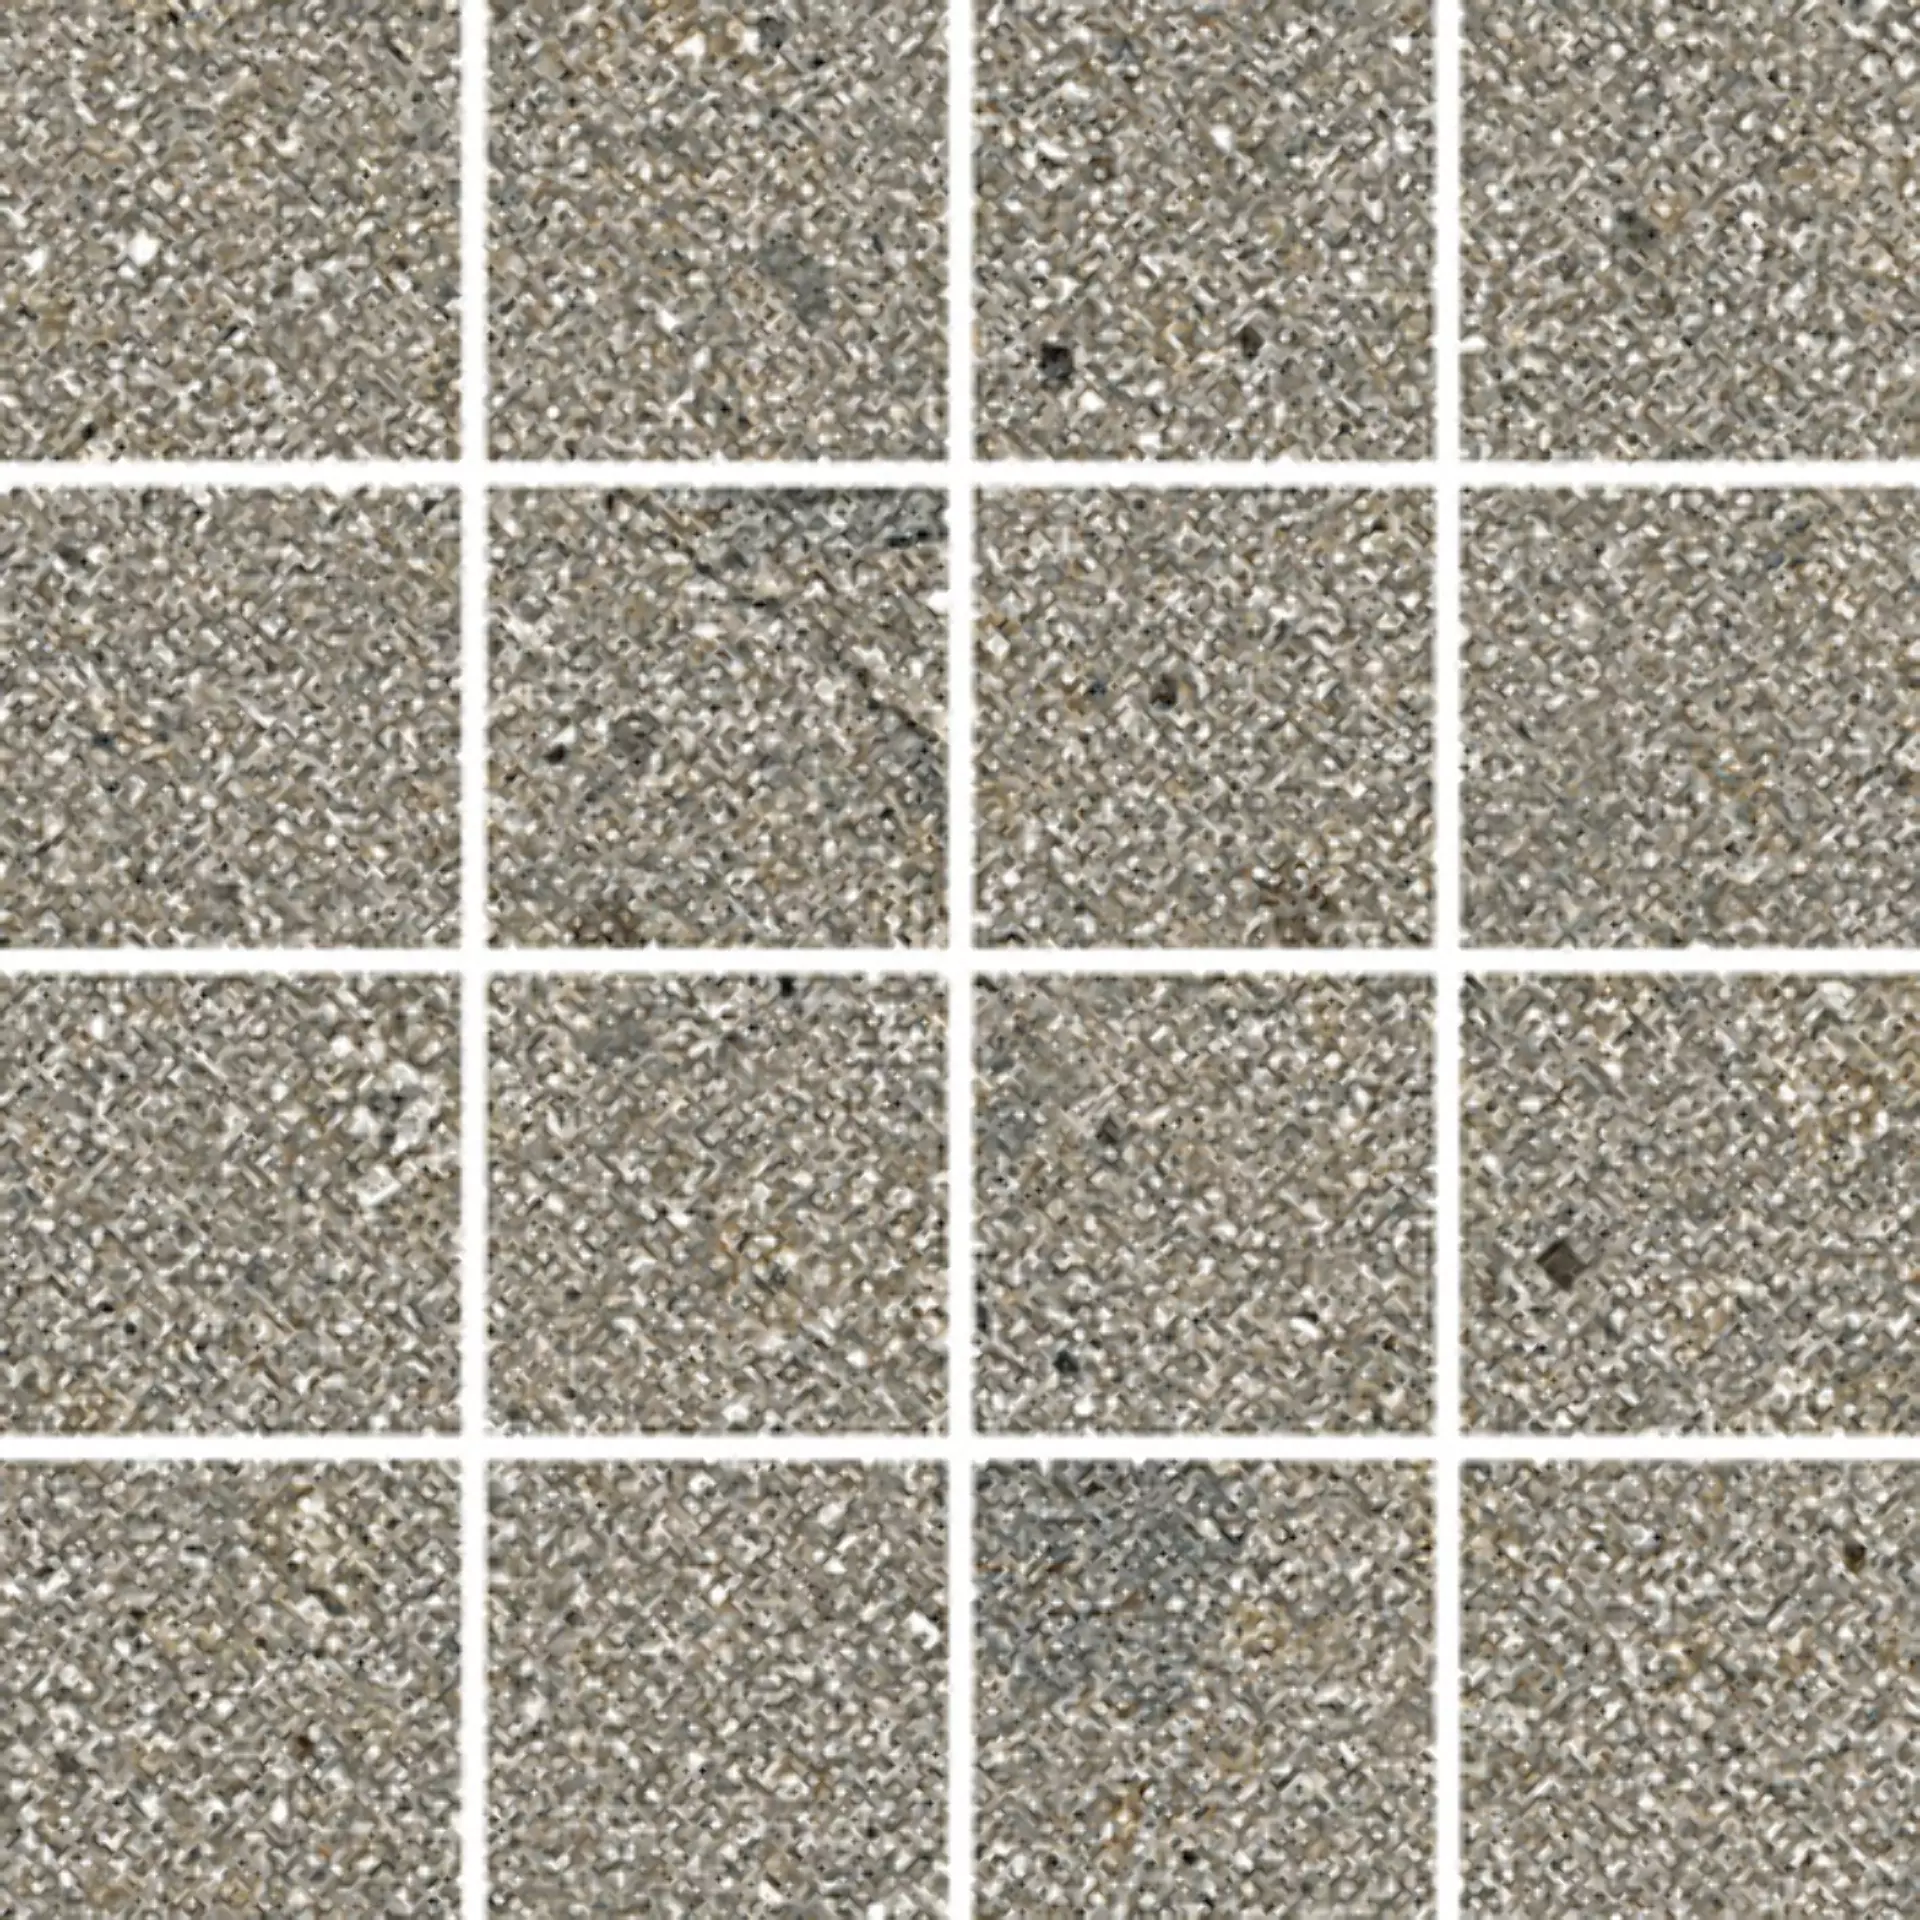 Wandfliese,Bodenfliese Villeroy & Boch Code 2 Porfid Matt Porfid 2013-SN70 matt 7,5x7,5cm Mosaik (7,5x7,5) rektifiziert 9mm